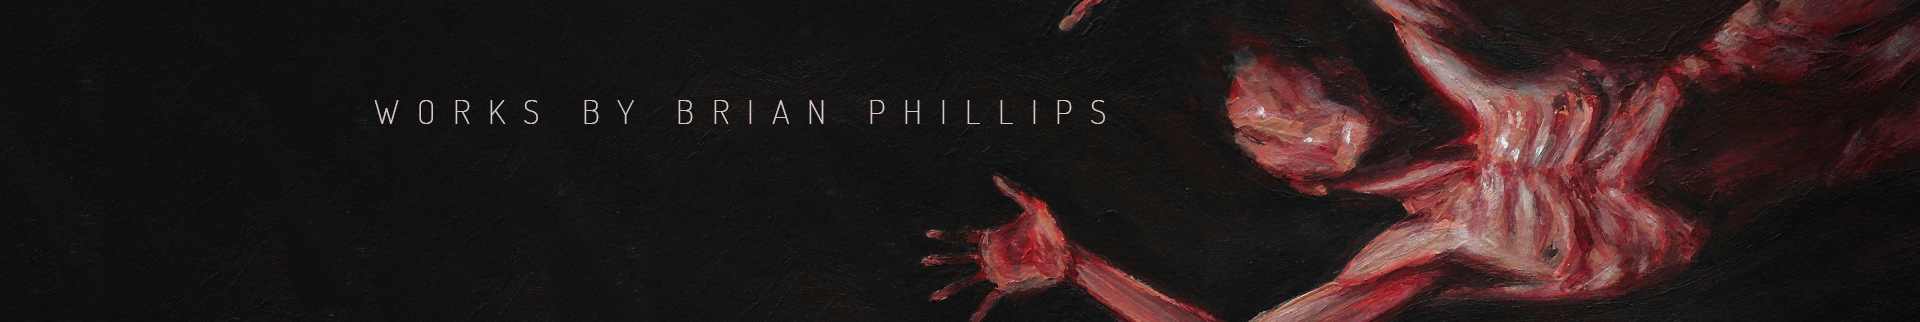 Brian Phillips's profile banner